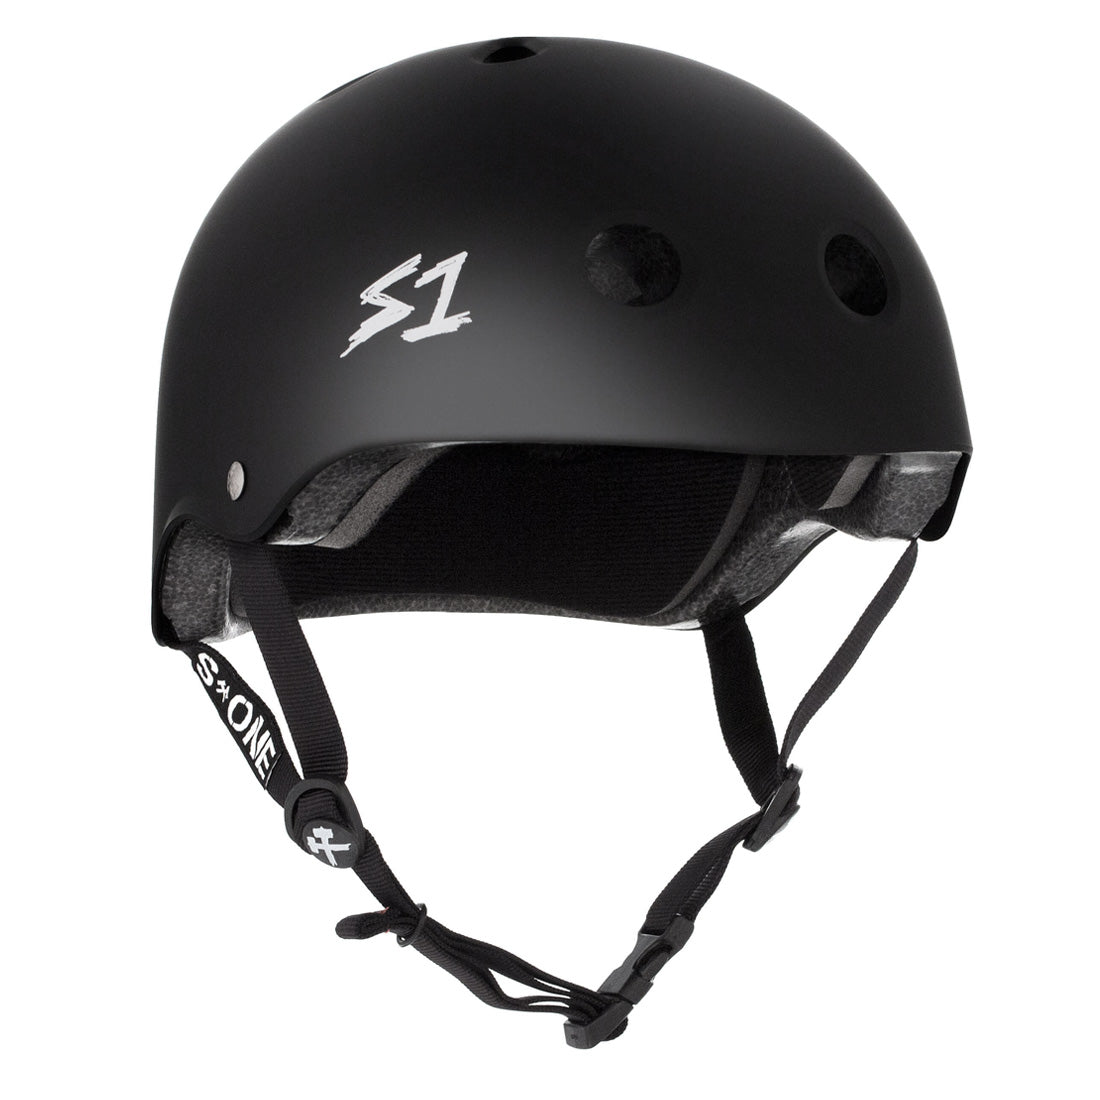 S-One Lifer Helmet - Black Matte Helmets